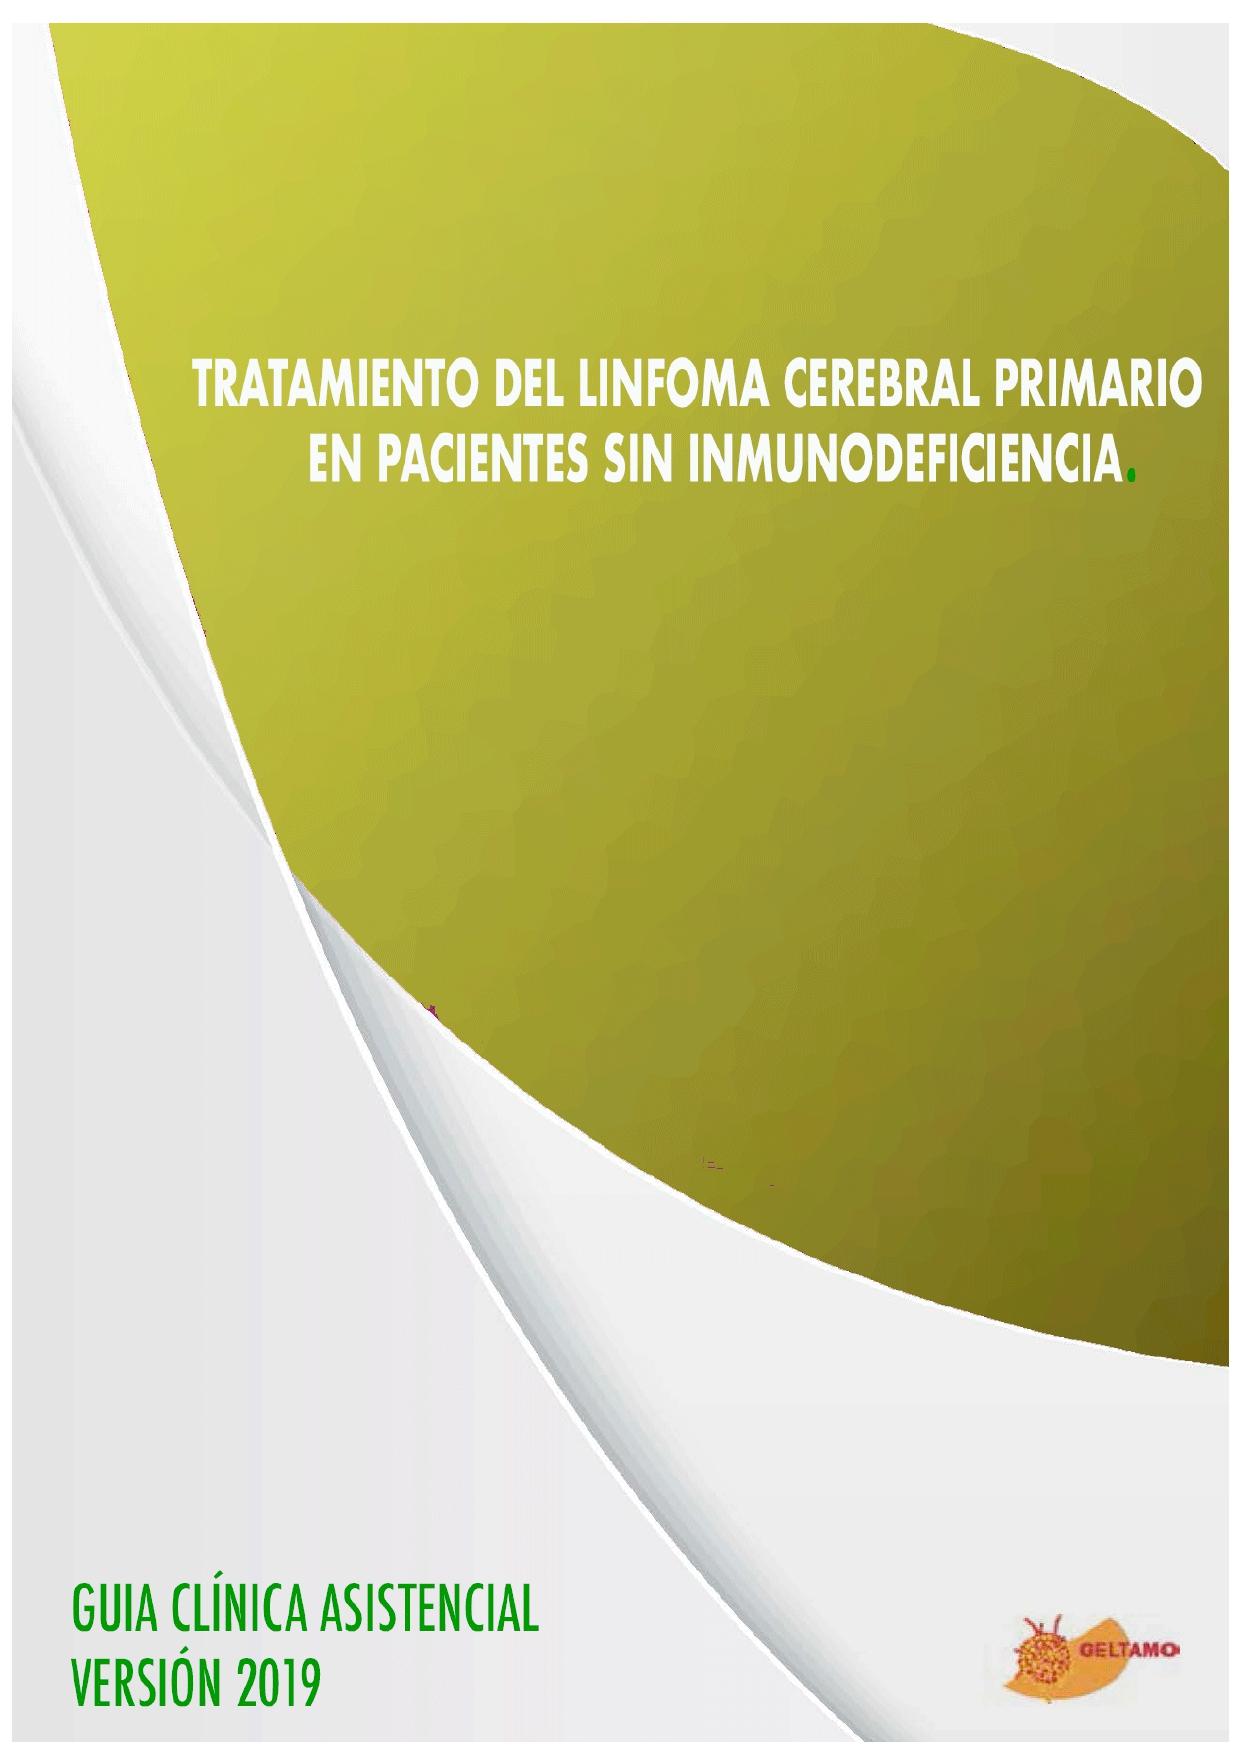 Guía terapéutica GELTAMO para el tratamiento del linfoma cerebral primario en pacientes no inmunodeprimidos